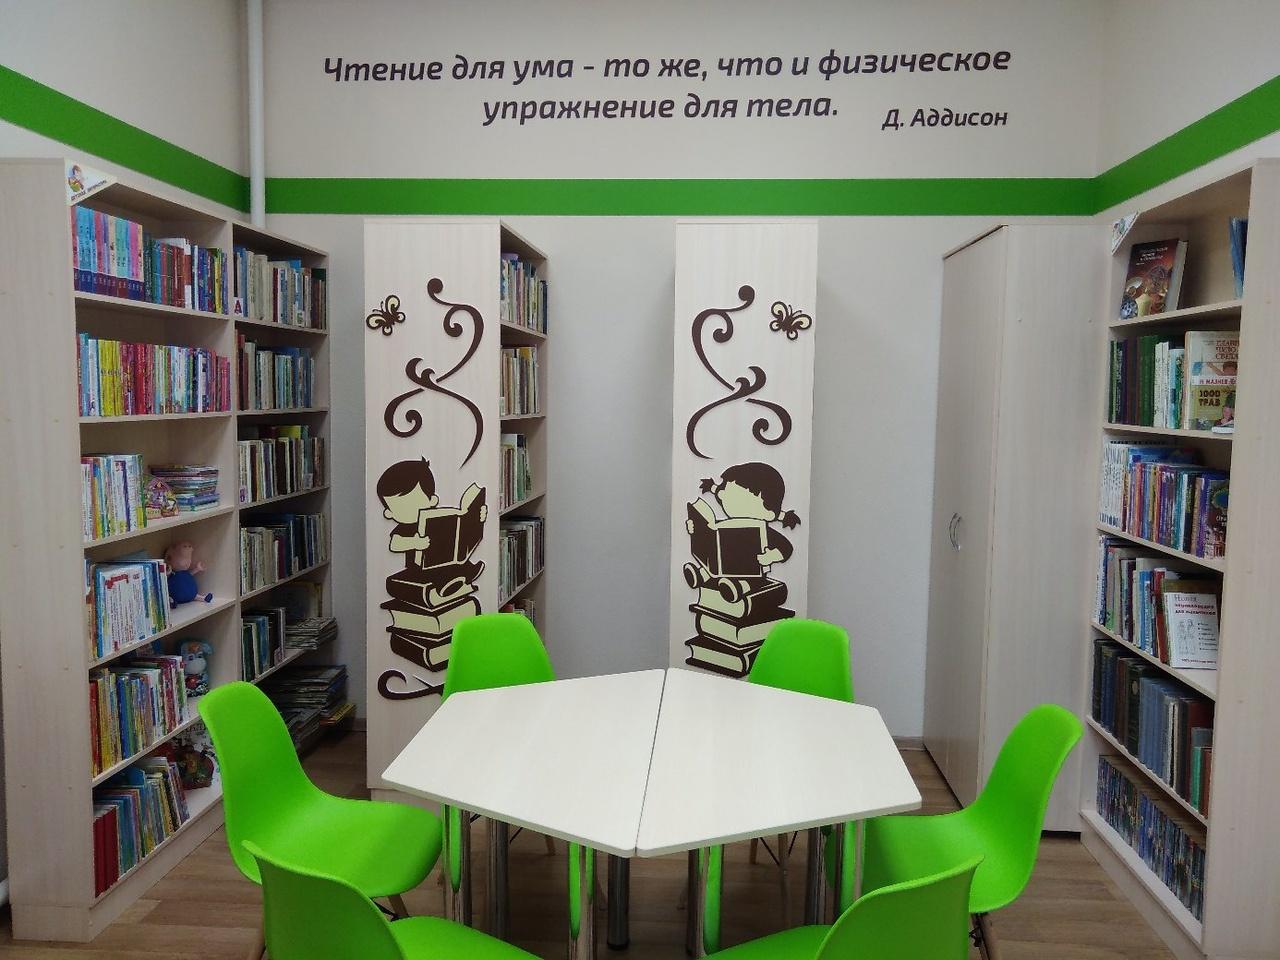 Большекерлегешская сельская библиотека – филиал № 2